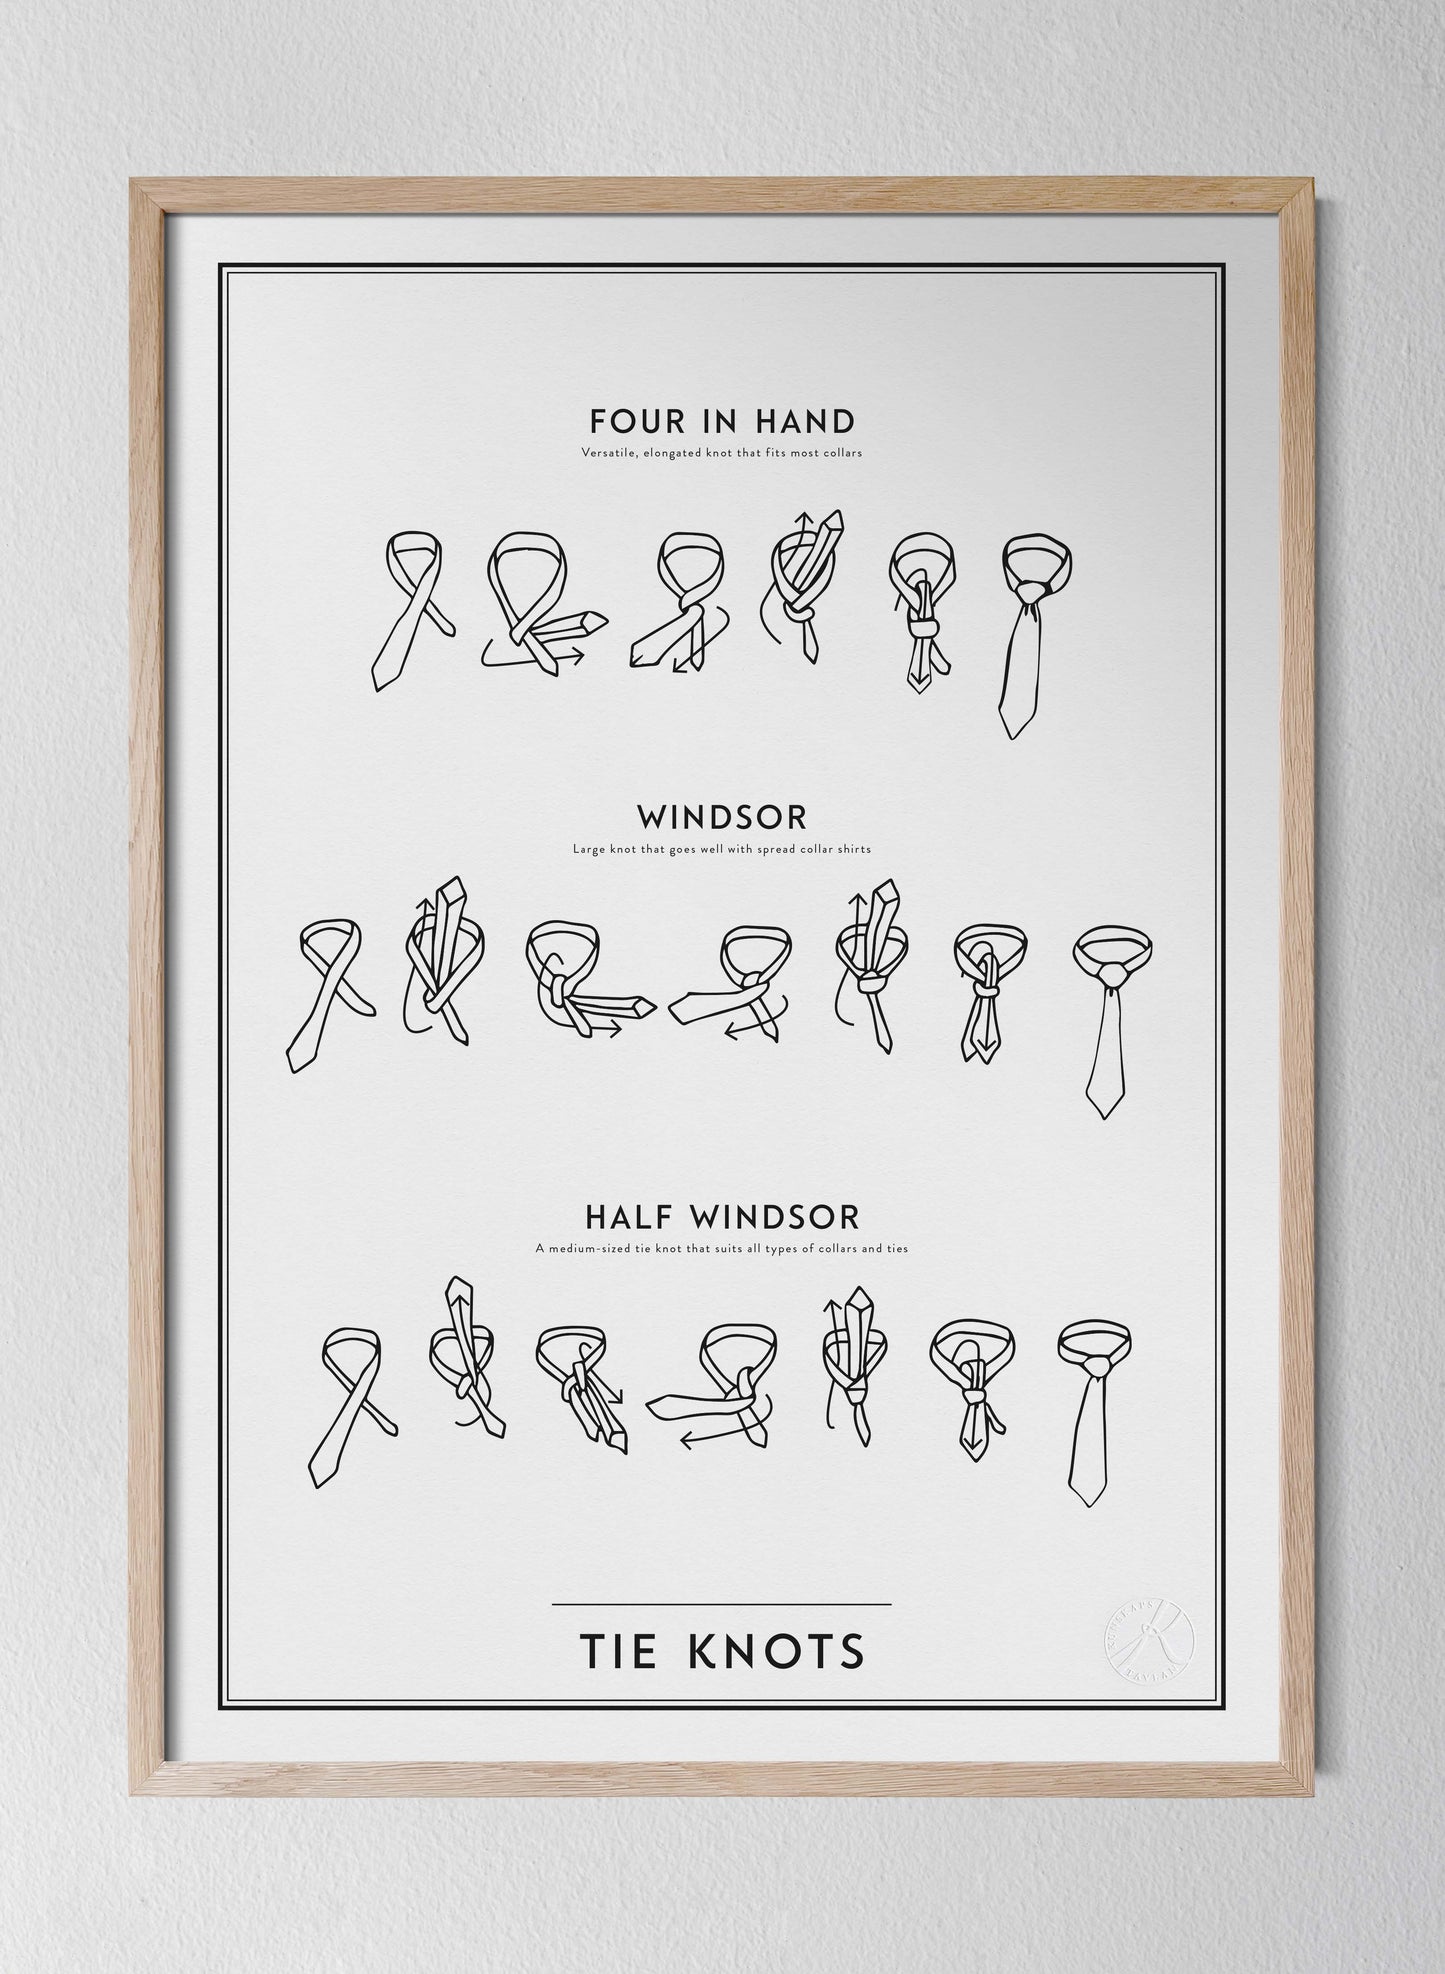 Tie knots - på engelska